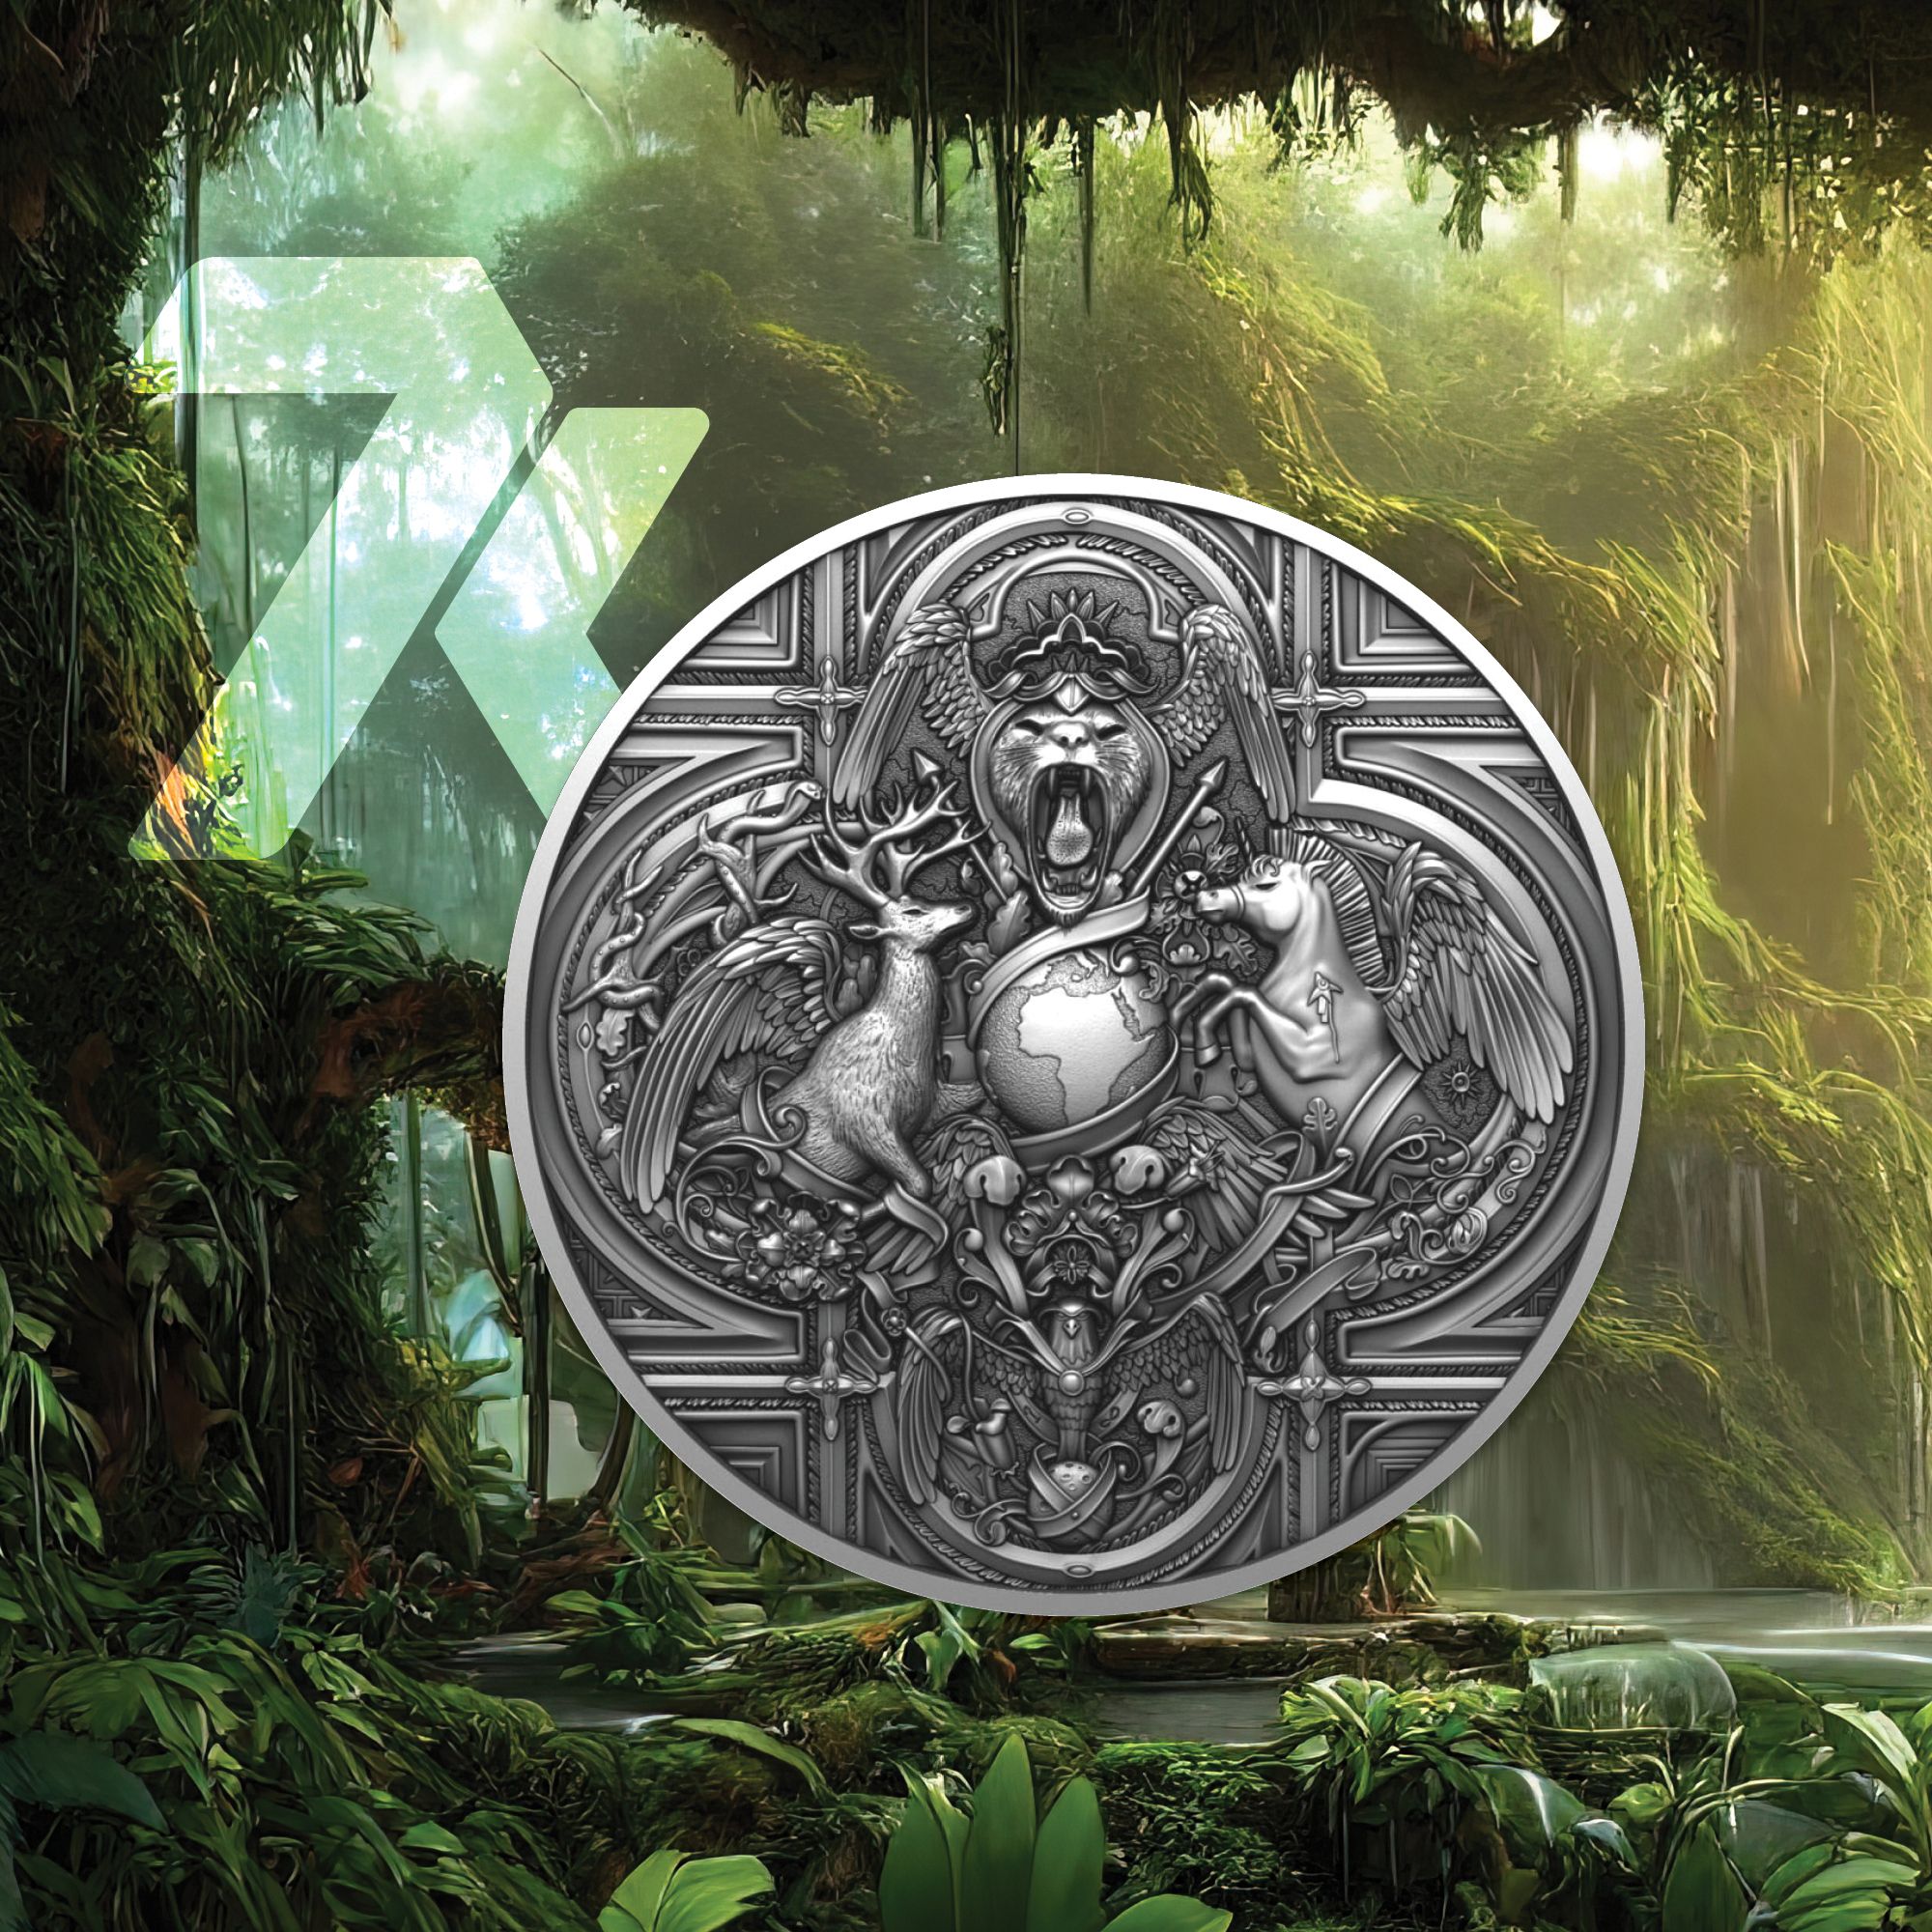 2022 Wild Scenery 2 oz Silver Coin